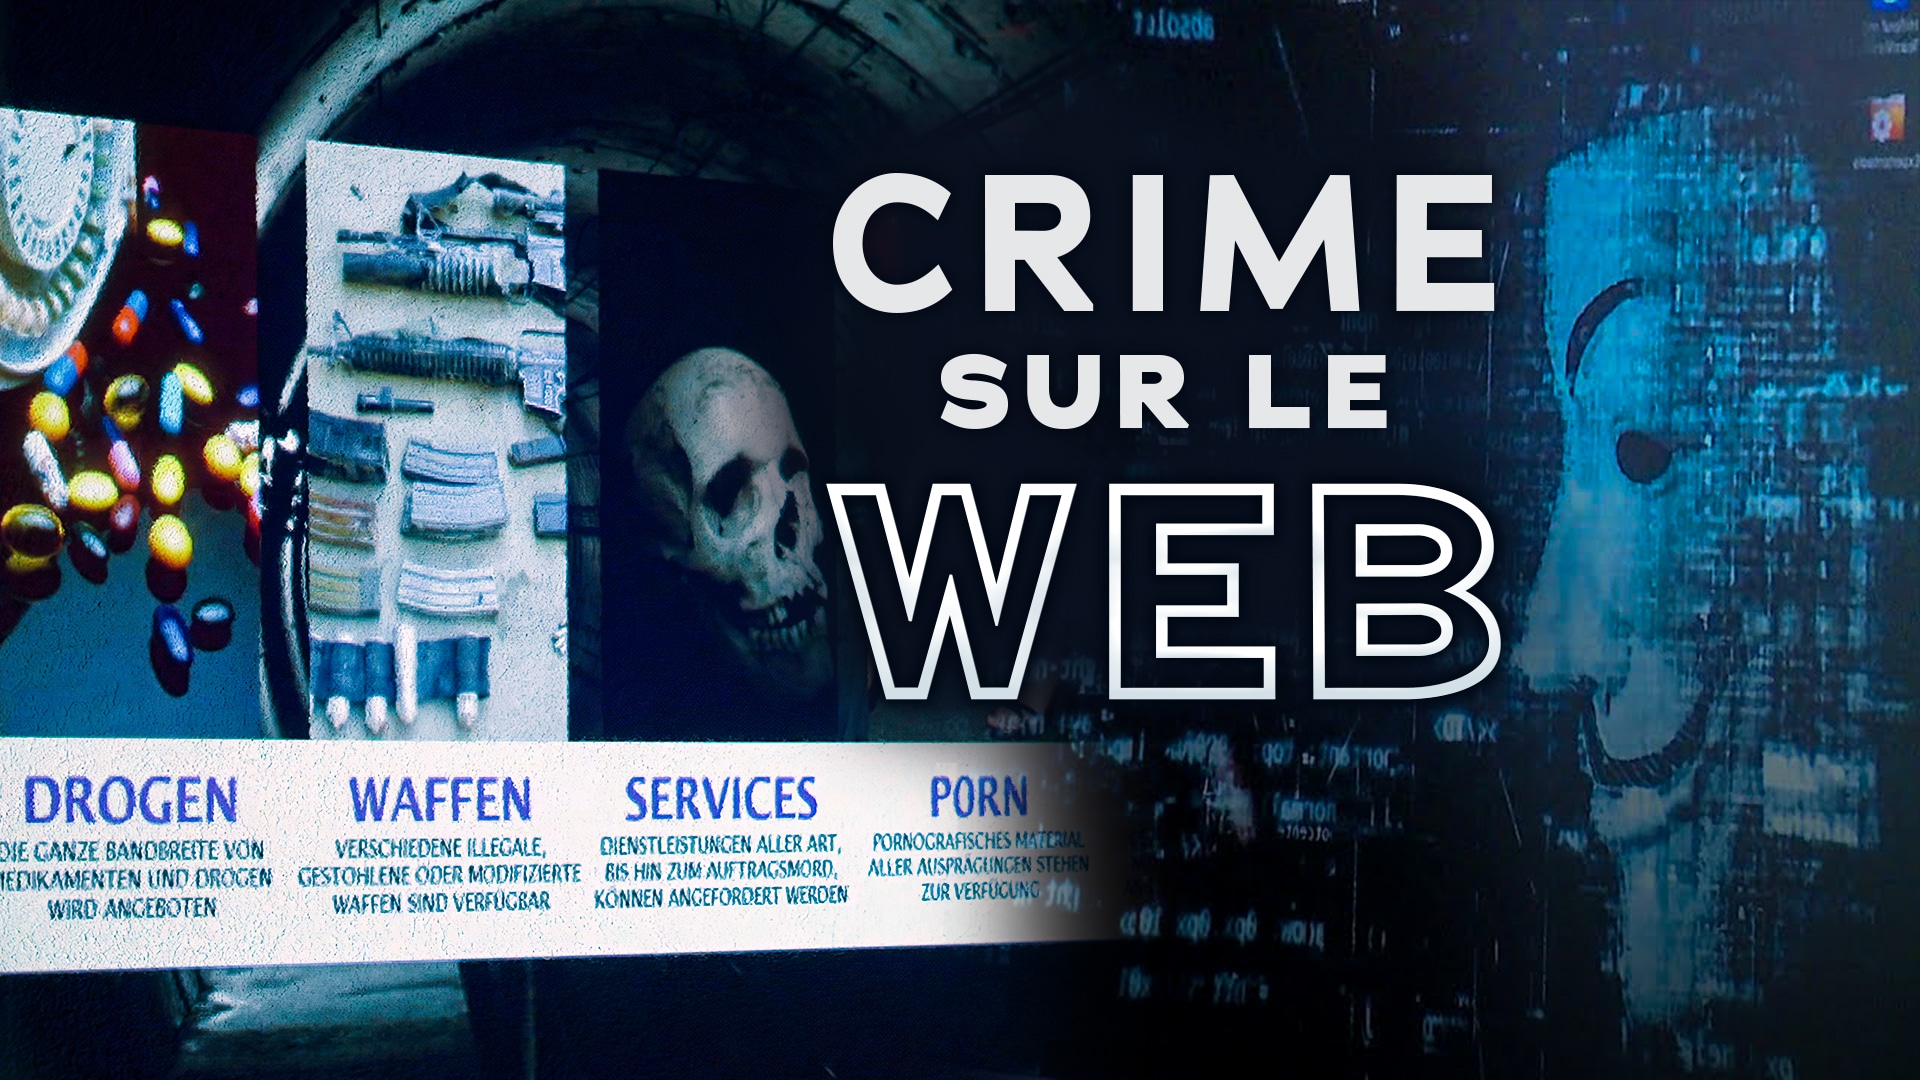 Crimes sur le web